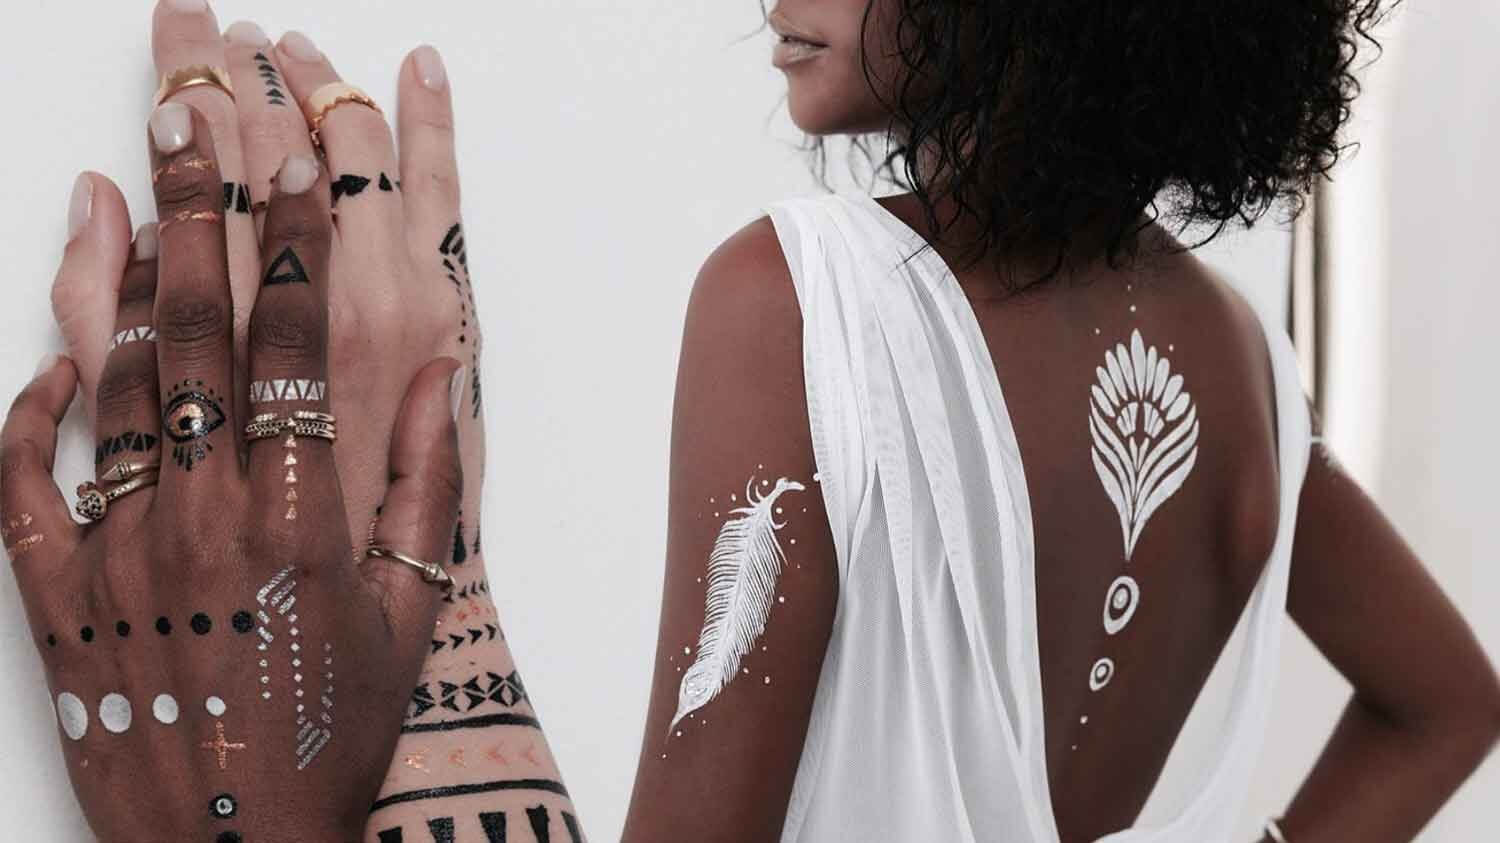 Buy POLICE To Be Tattoo Art Eau de Parfum - 40 ml Online In India |  Flipkart.com